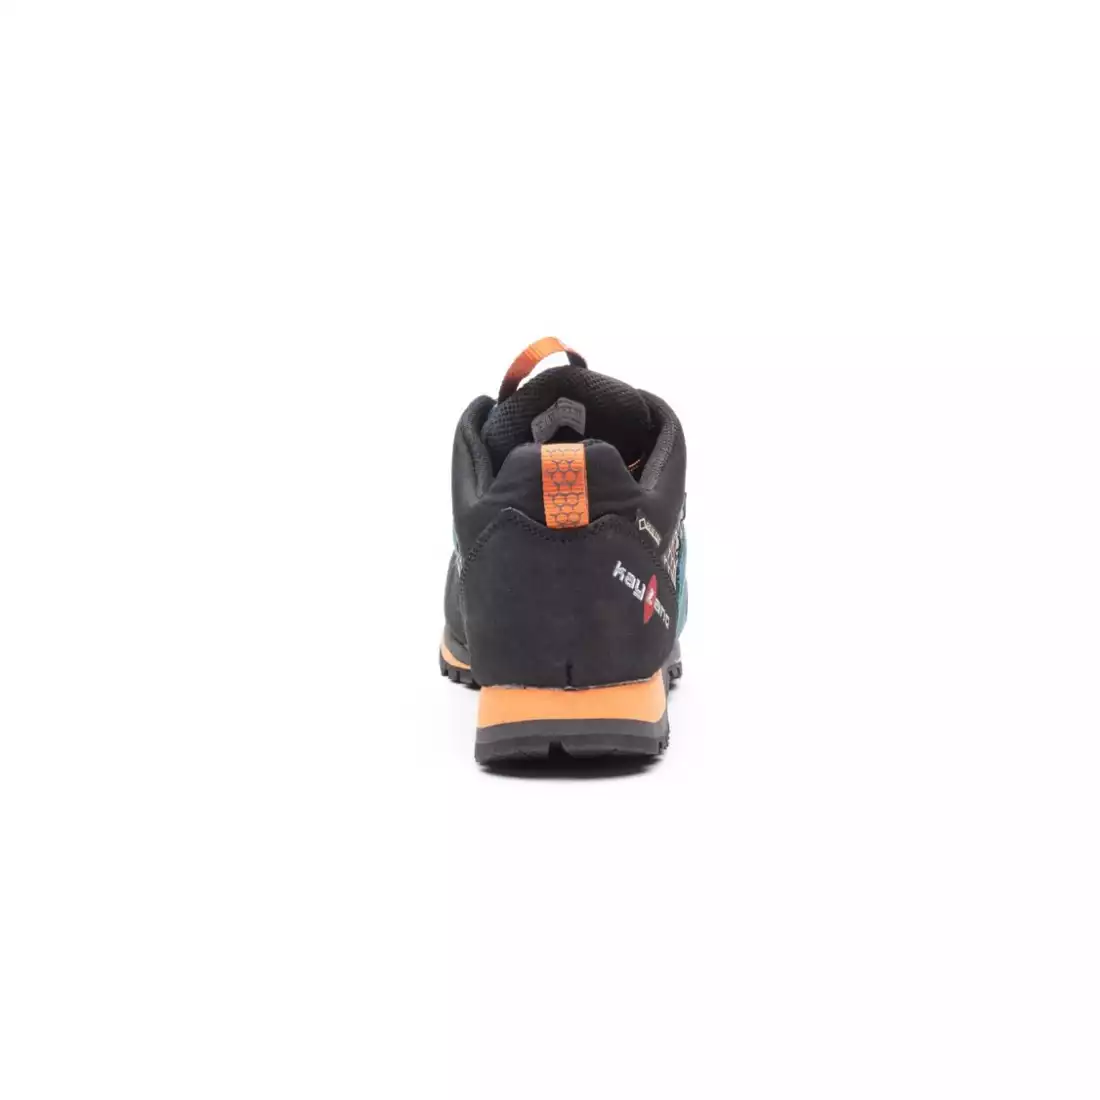 KAYLAND VITRIK GTX Pánská přístupová turistická obuv, GORE-TEX, VIBRAM, modro-oranžová